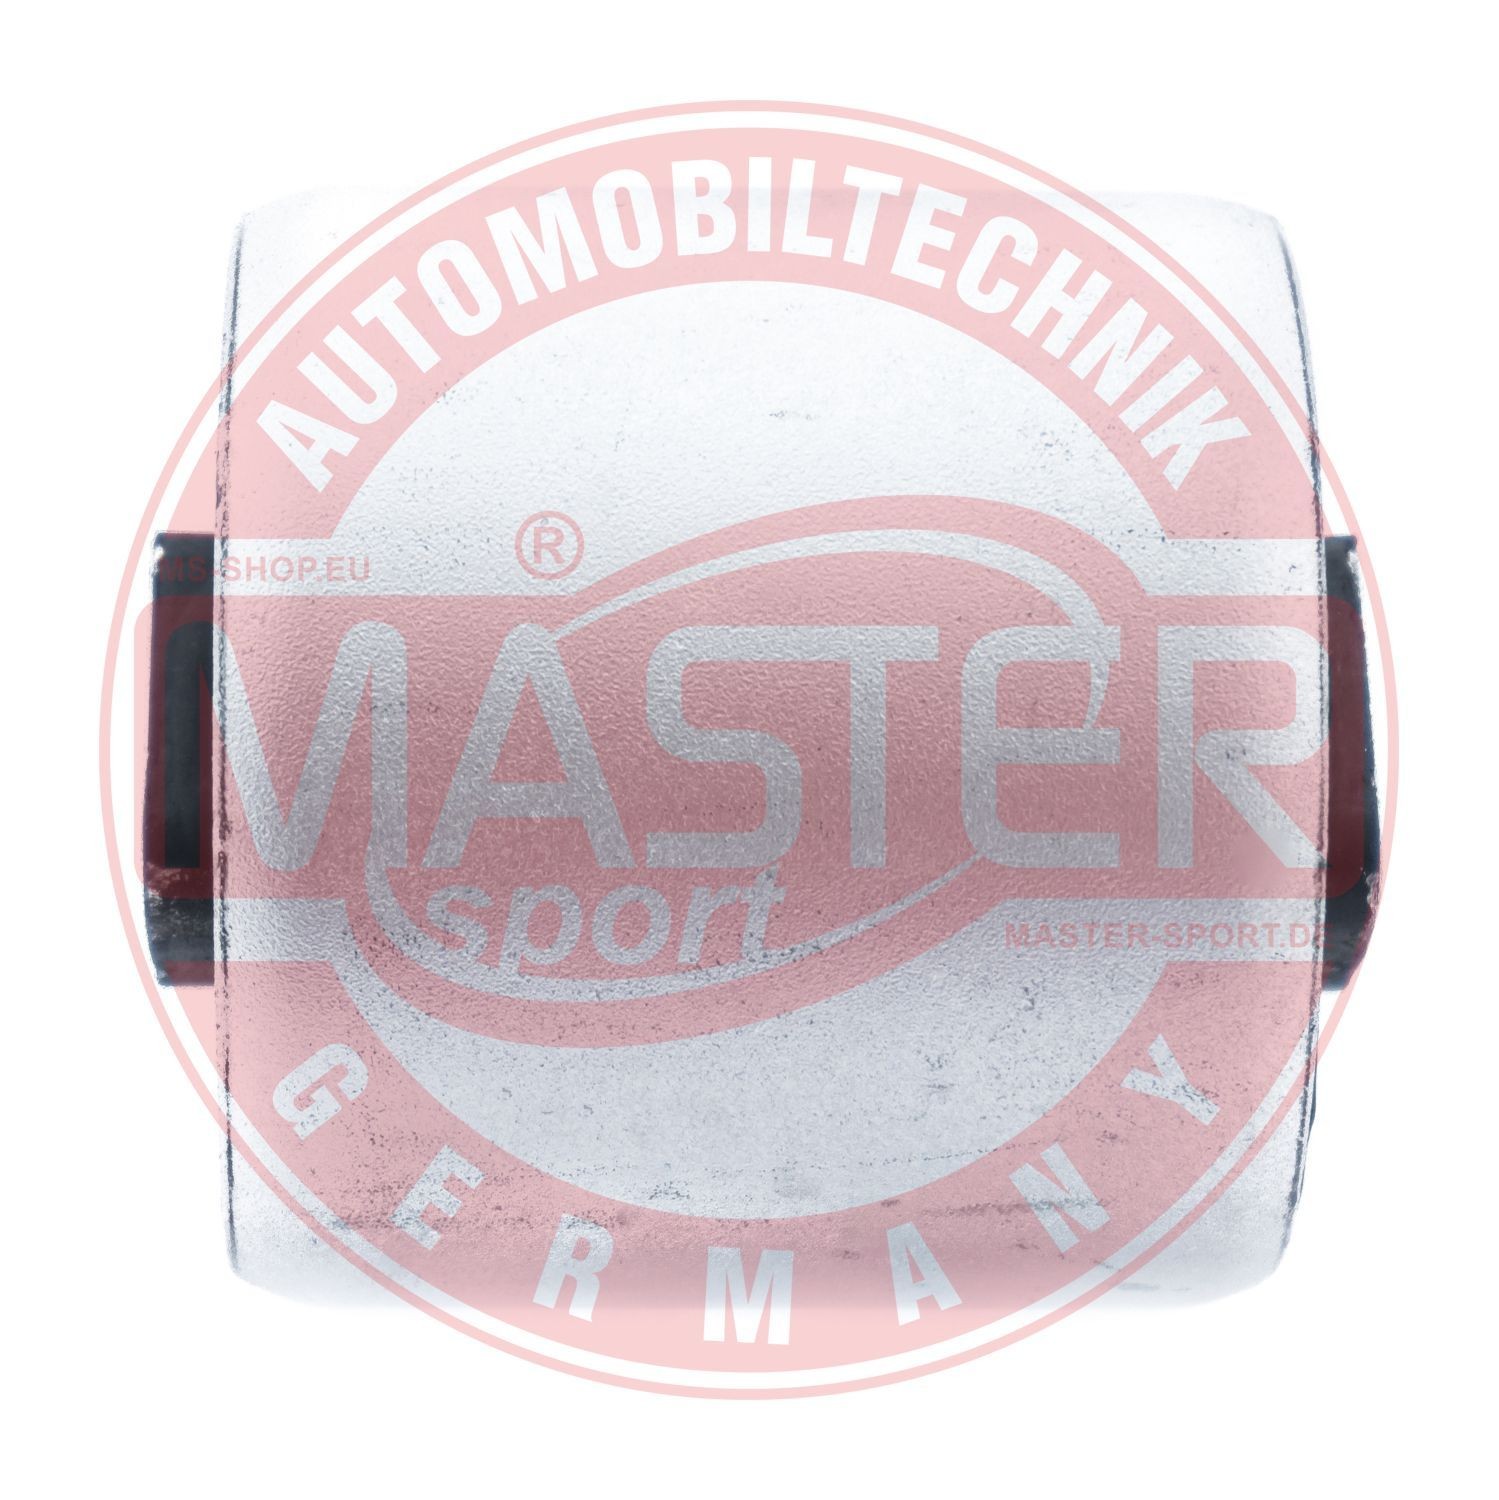 MASTER-SPORT Repair Kit, link 27108-PCS-MS for BMW 5 Series, 6 Series